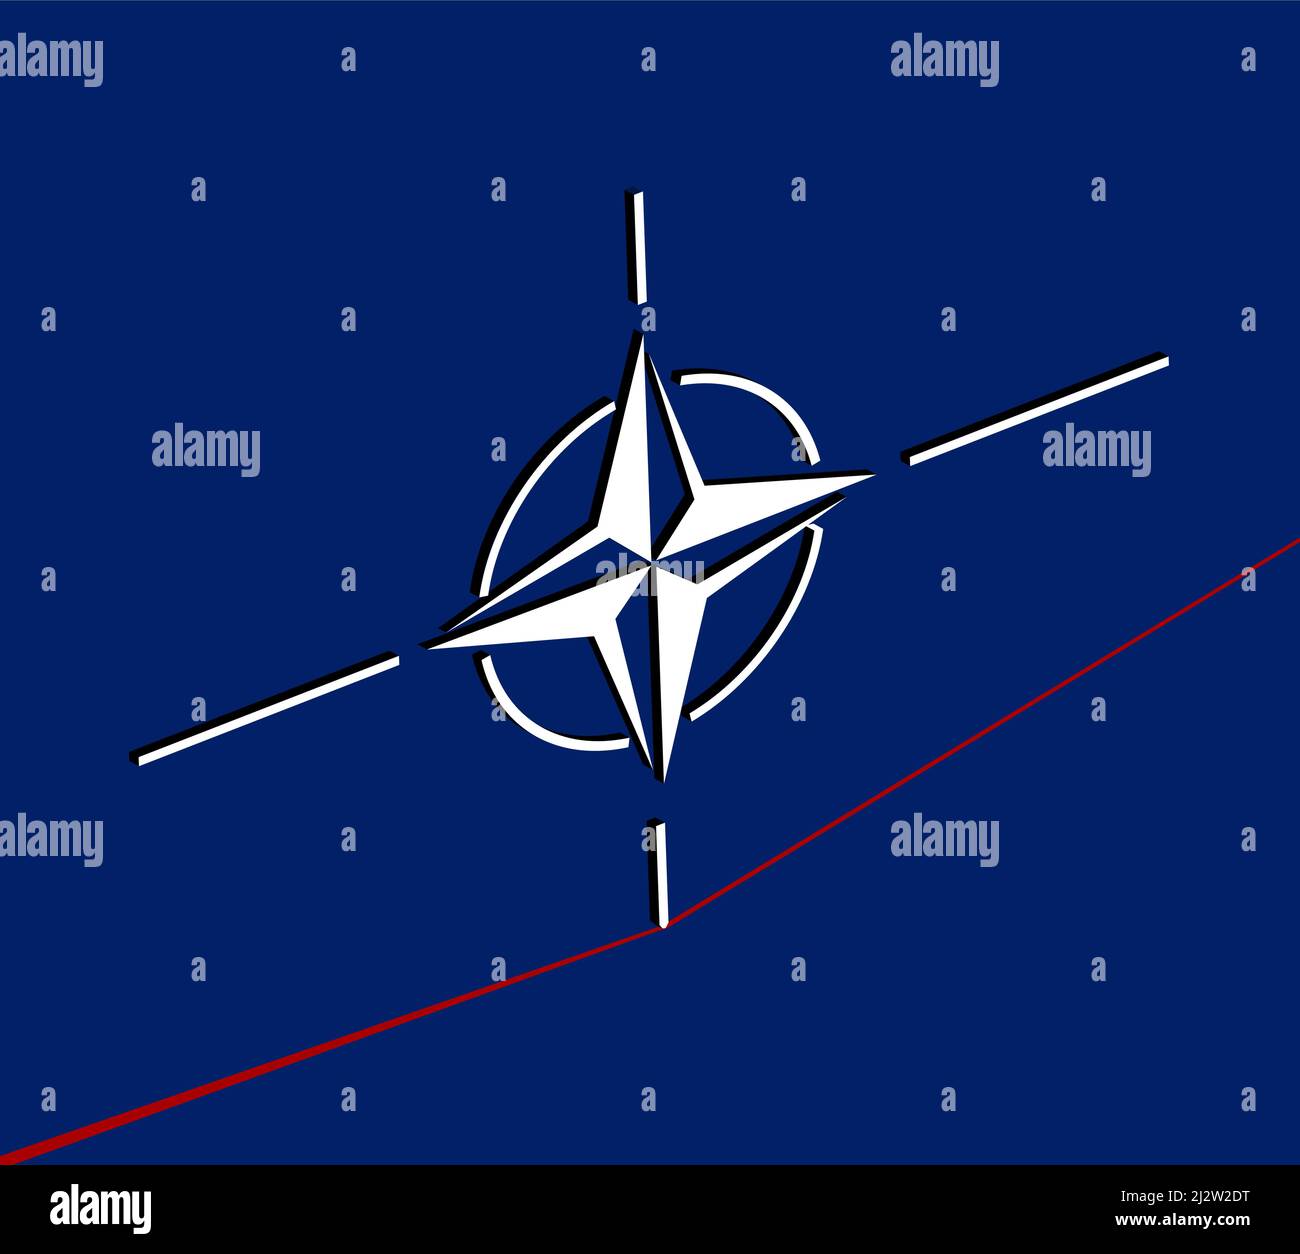 Brüssel, Belgien - 24. März 2022: Symbol der NATO, die versucht, in roter Linie ein Gleichgewicht herzustellen, Illustration der Organisation des Nordatlantikvertrags, die auch als OTA bekannt ist Stock Vektor